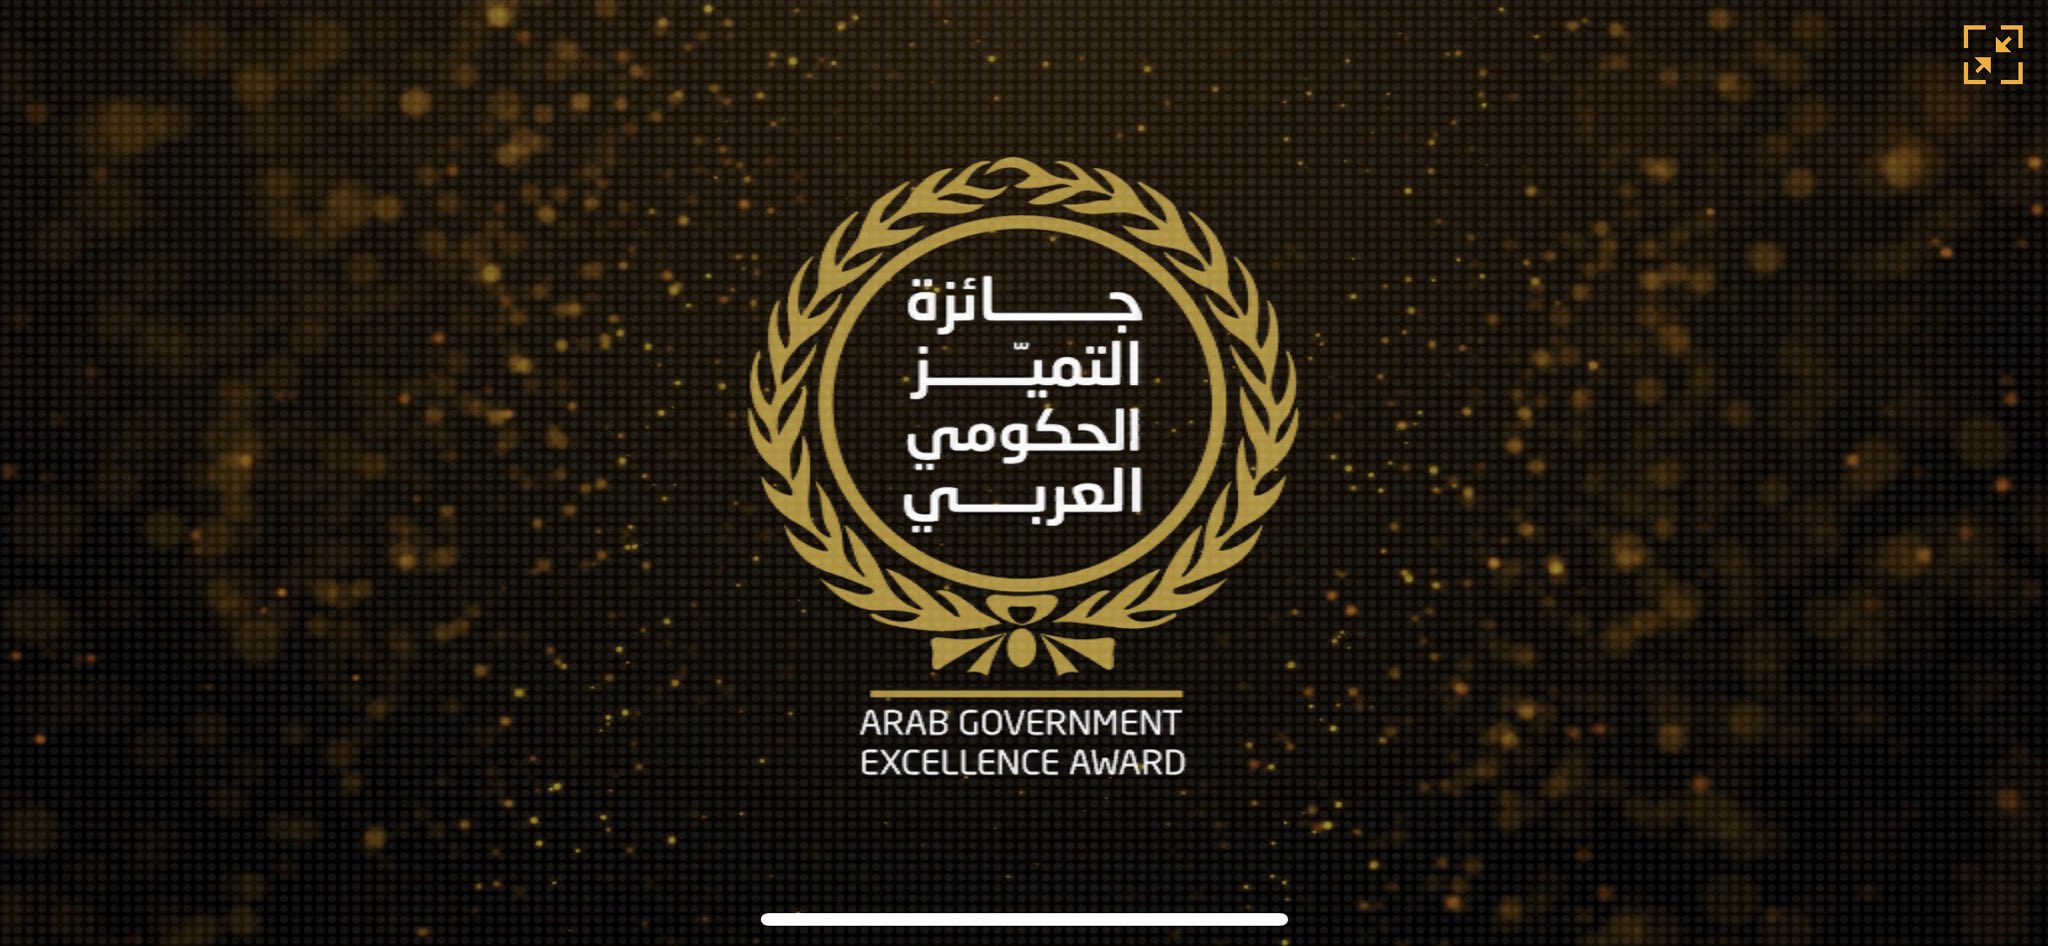 الإعلان عن أسماء الفائزين بجائزة "التميز الحكومي العربي"